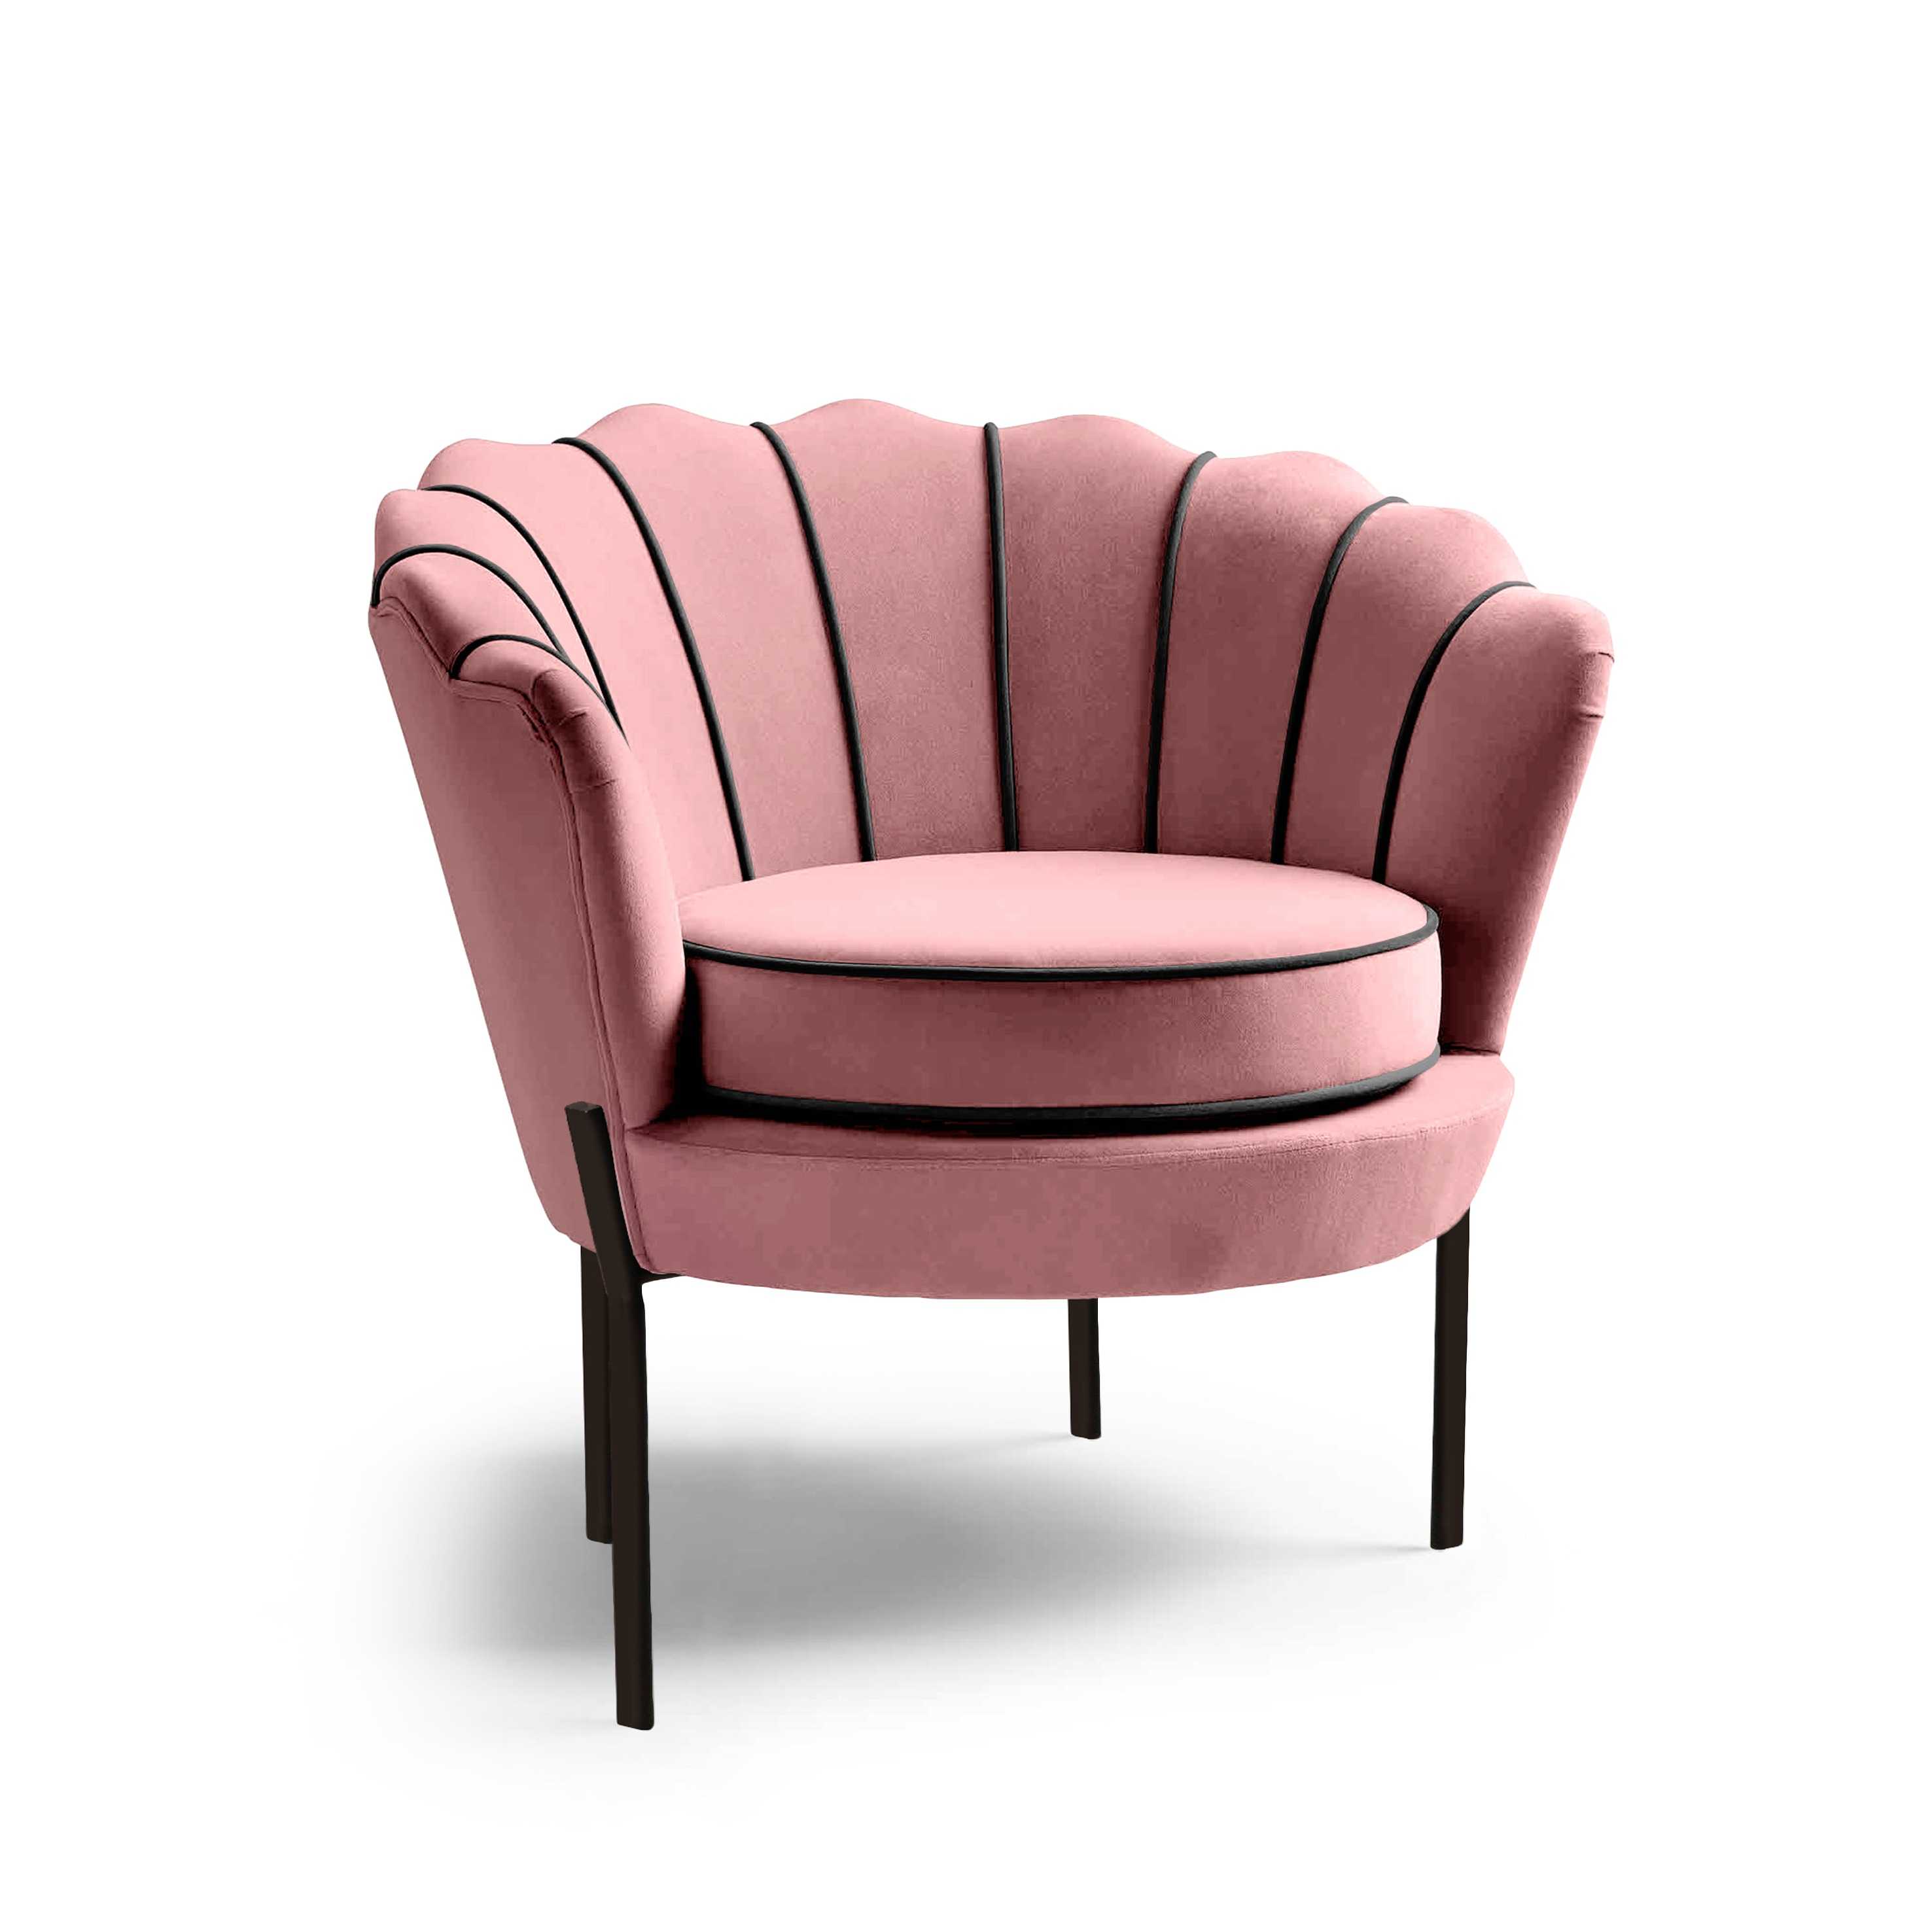 ANGELO fotel wypoczynkowy różowy / czarny angelo fotel wypoczynkowy różowy / czarny